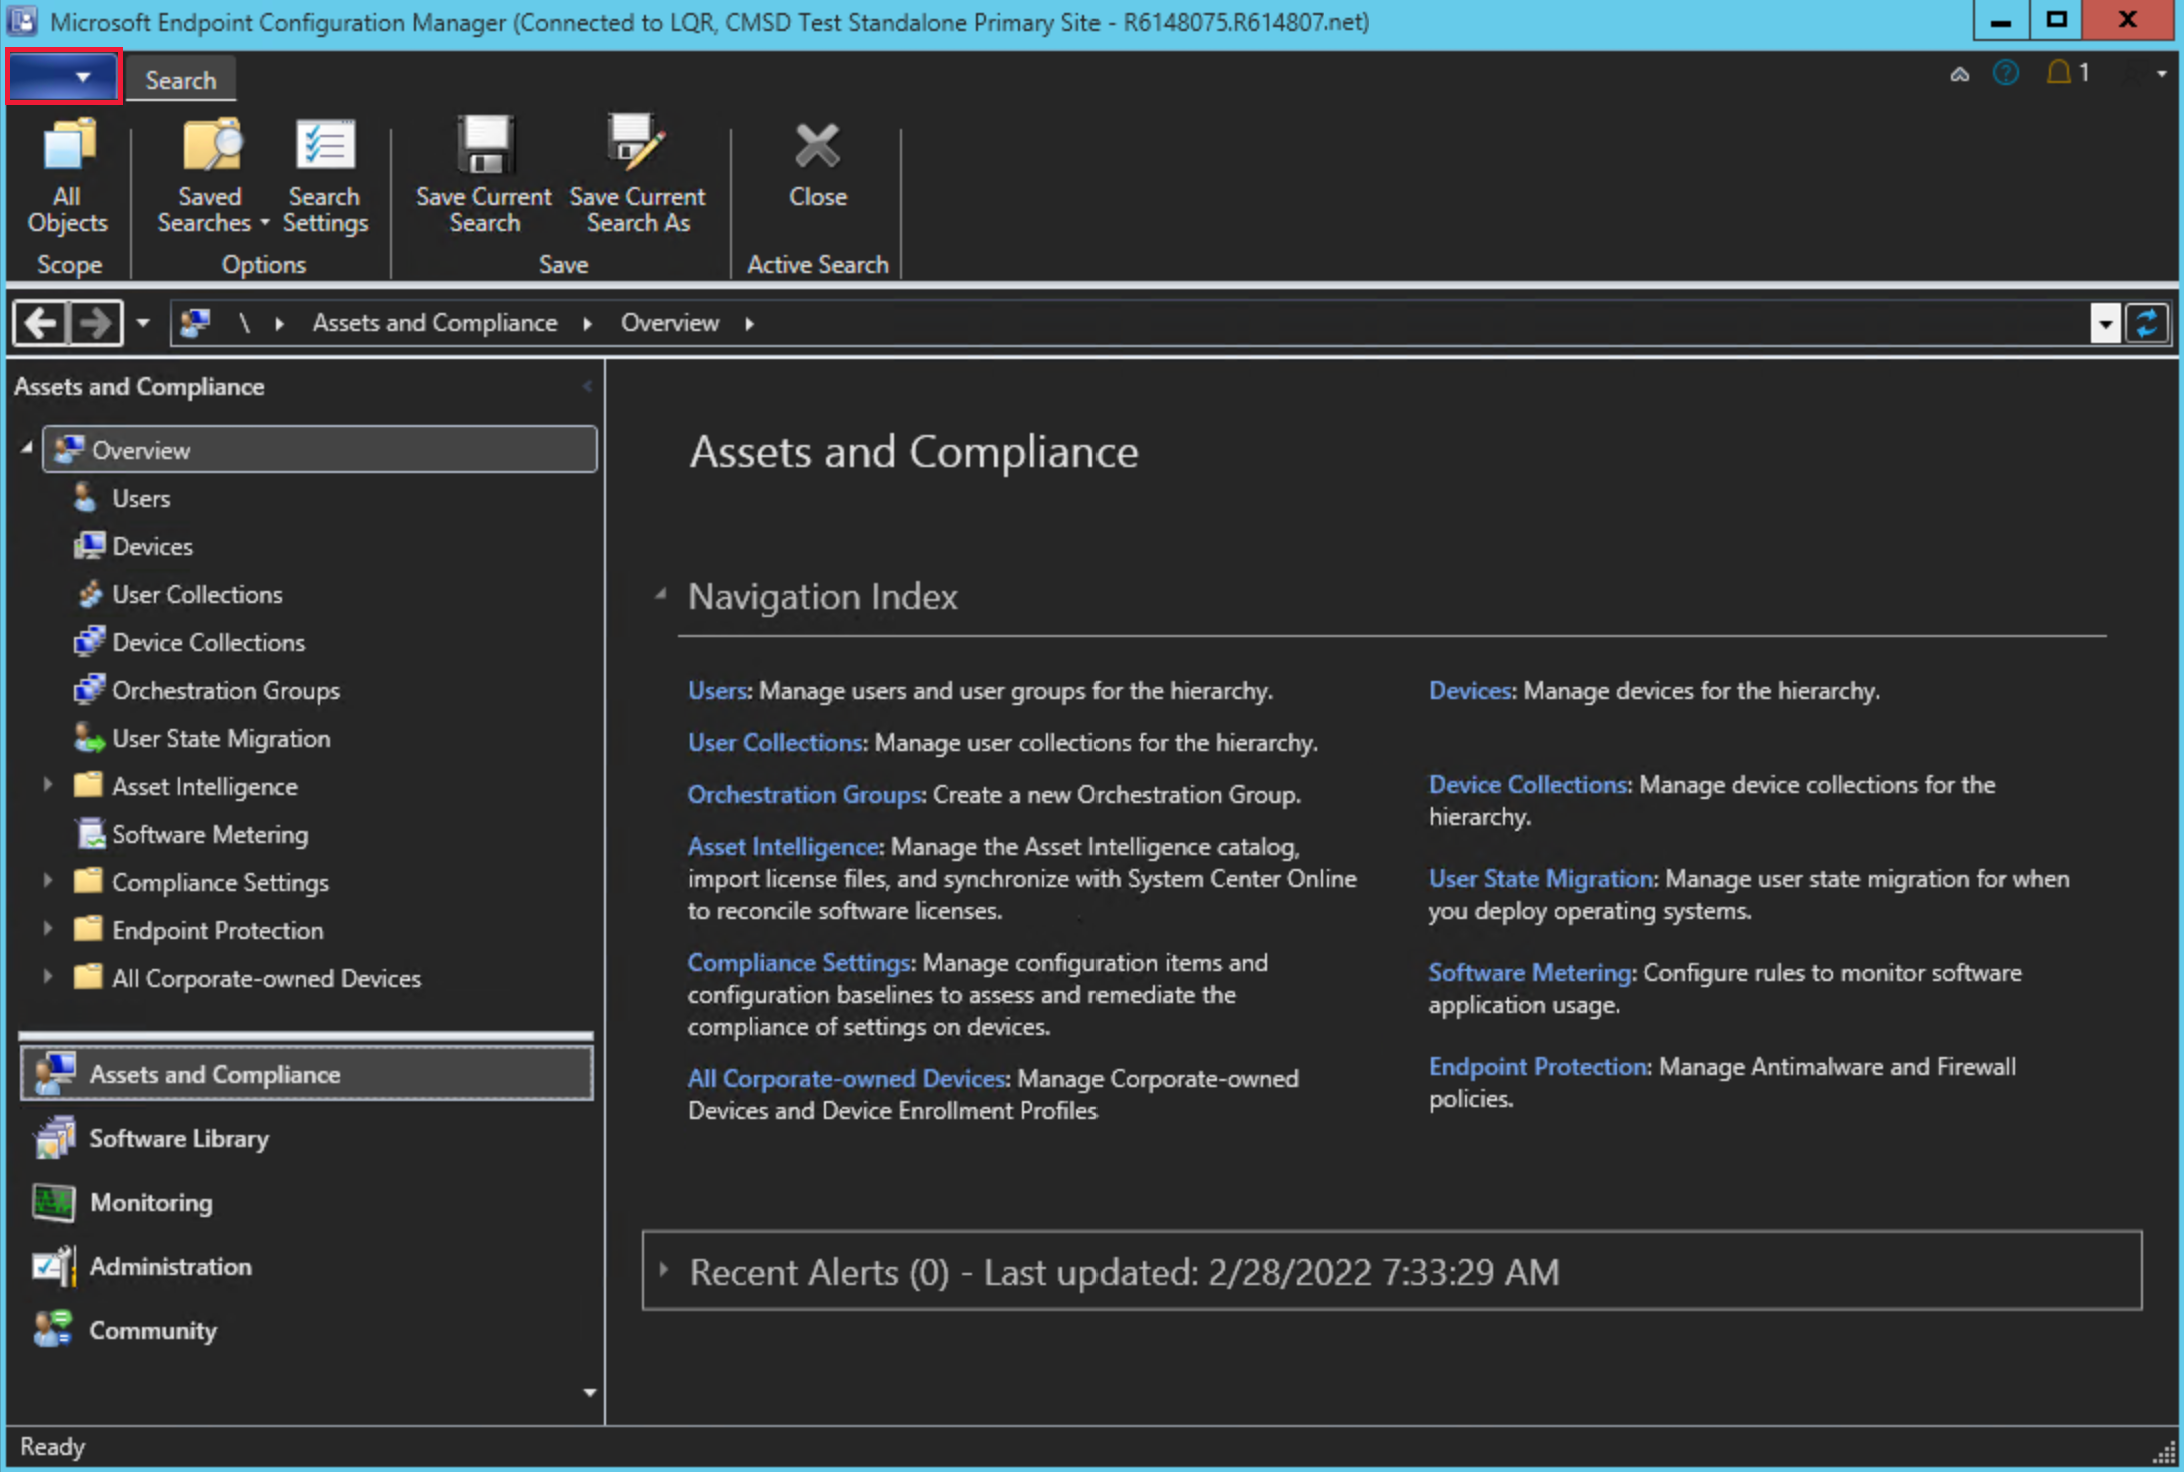 Captura de tela do Configuration Manager usando o tema escuro para o console. A opção 